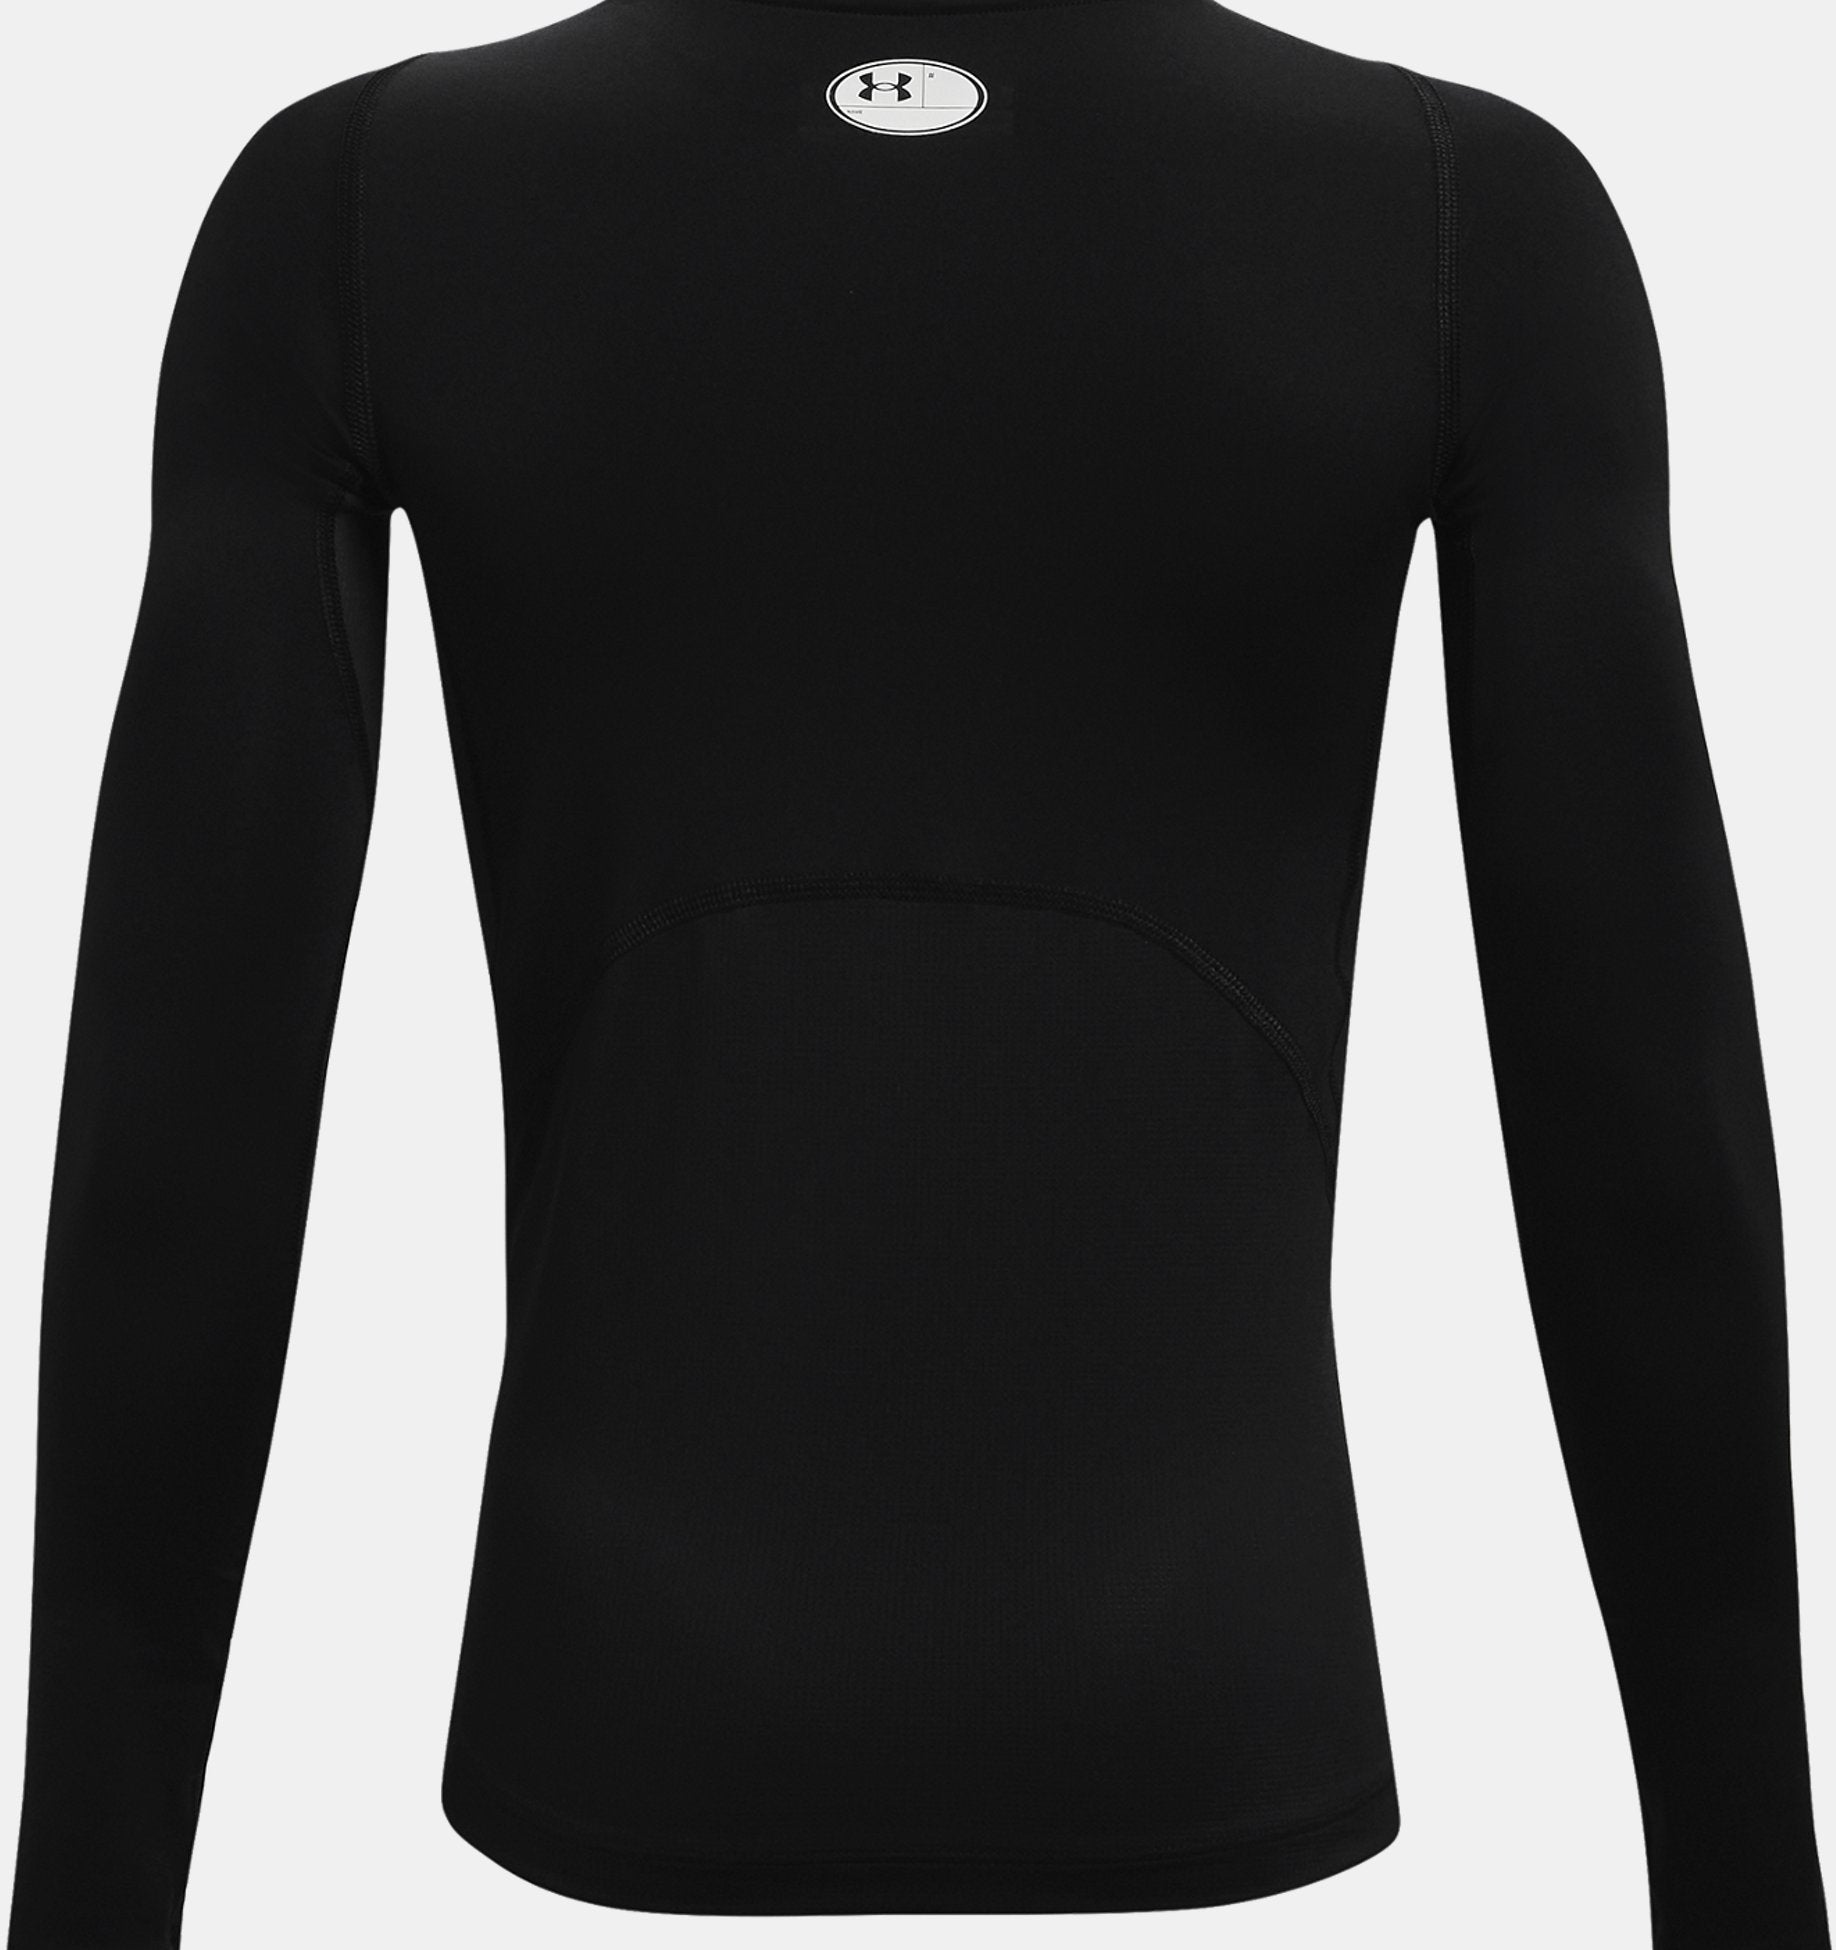 Under Armour HeatGear® Long Sleeve Black/Blue Surf, £28.00